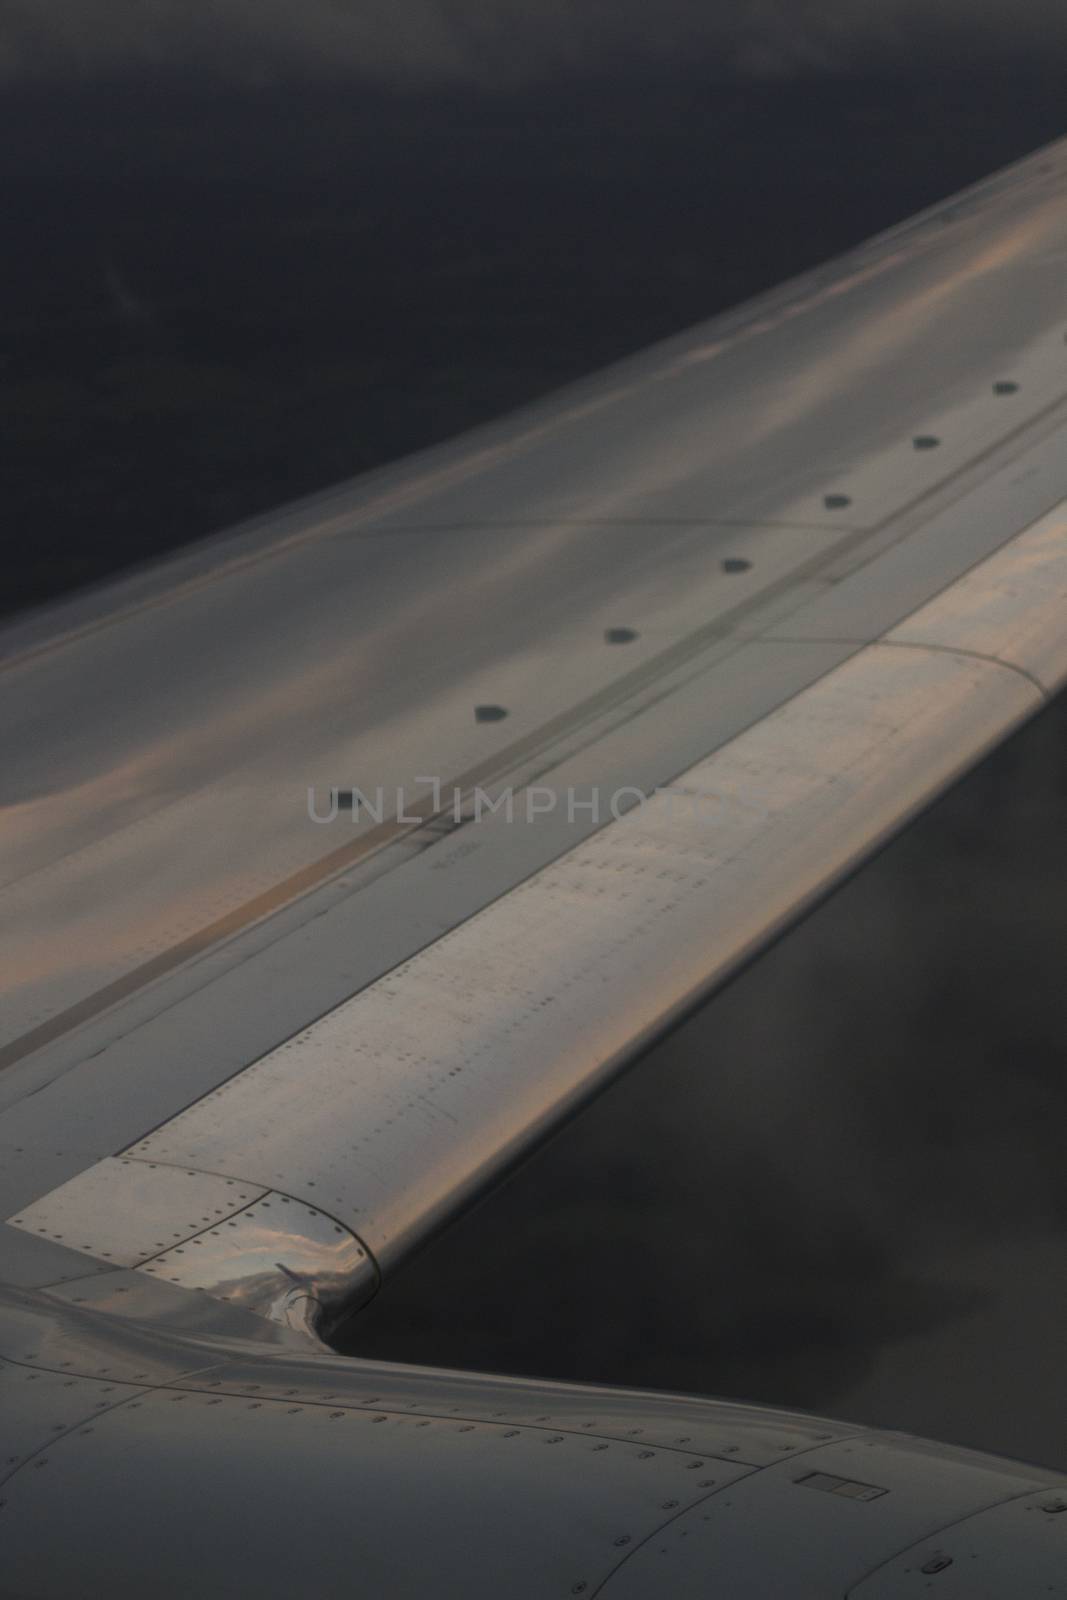 Airplane flying in grey sky in flight metal wing.